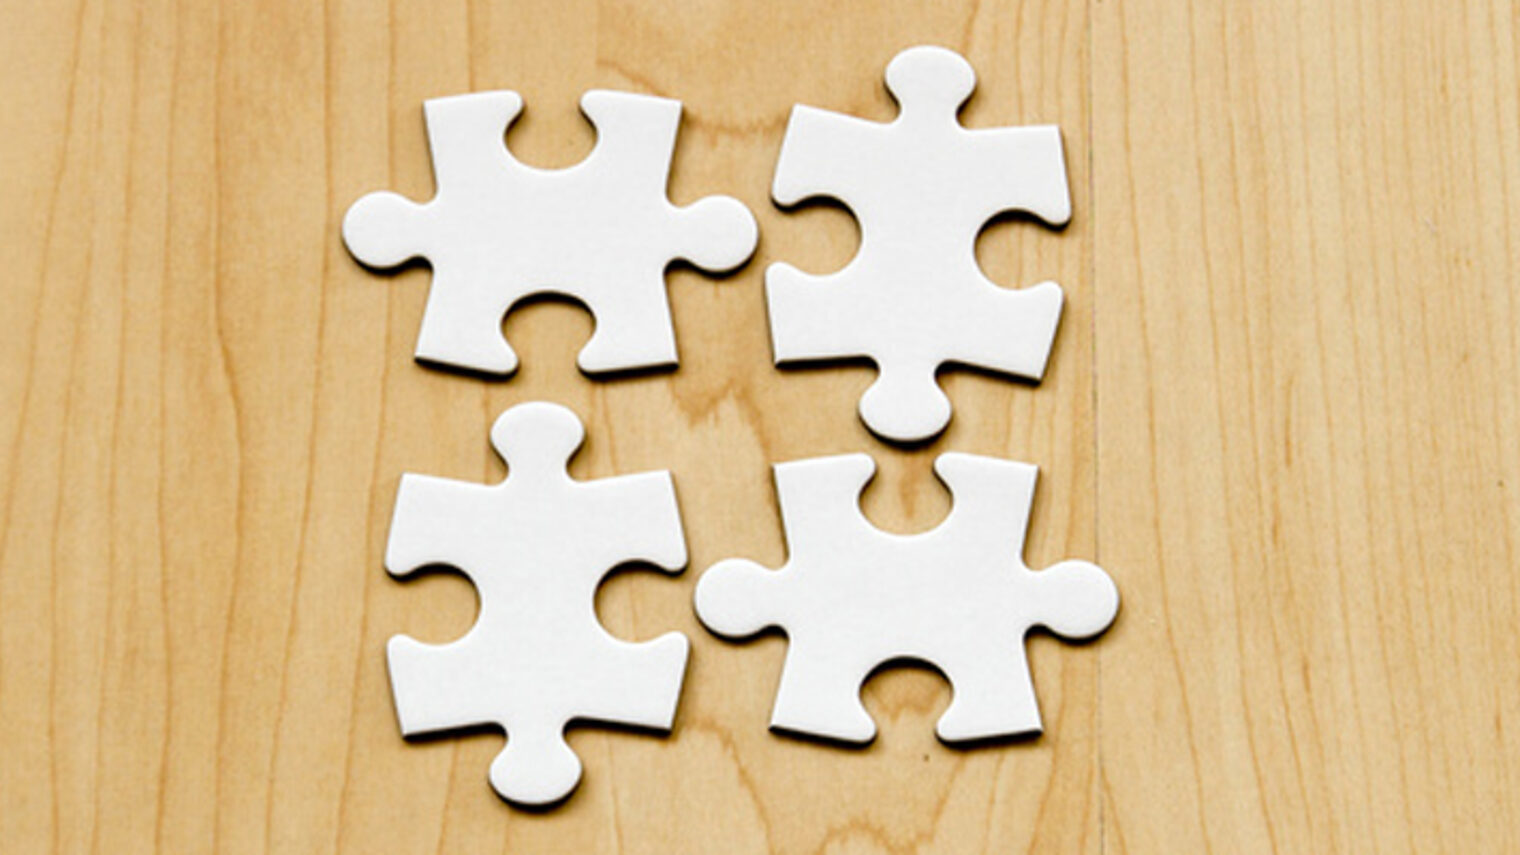 Vier zusammenpassende Puzzleteile (weiß) auf Holzuntergrund Schlagwort(e): trennen, getrennt, voneinander trennen, trennung, auseinanderreien, unterschiede, unterschiedlich, separiert, puzzle, teile, puzzleteile, haufen, fehlendes, stck, zusammensetzen, passen, passend, abschlieen, fertigstellen, fertig, zusammenfgen, vervollstndigen, vollstndig, puzzlen, ergnzen, kompetenz, teamwork, zusammenarbeit, zusammenspiel, ein bild, whole picture, finden, wei, vernetzen, verzahnen, verbinden, verbindung, zusammenschluss, einig, eins